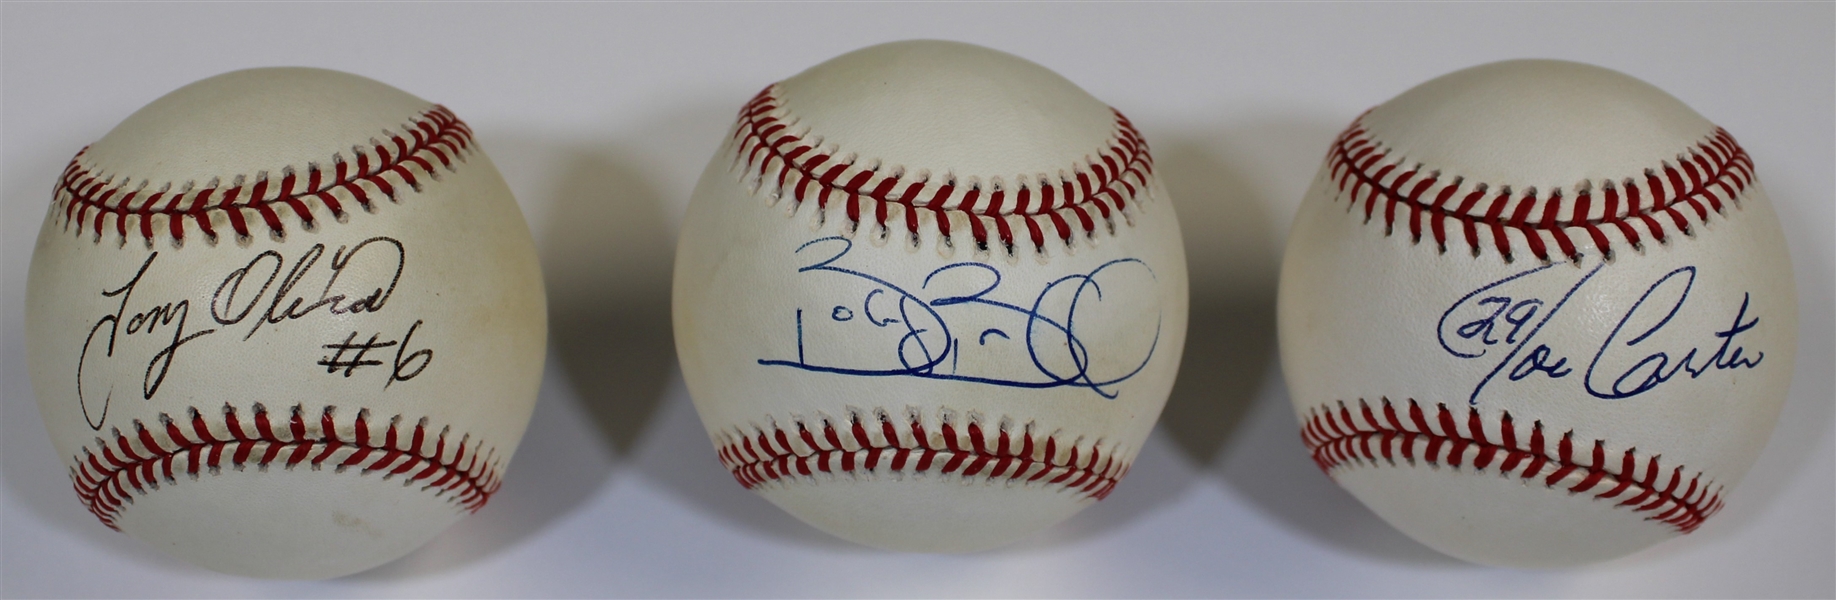 Joe Carter-Tony Oliva-Bobby Bonilla Signed Baseballs Lot of 3